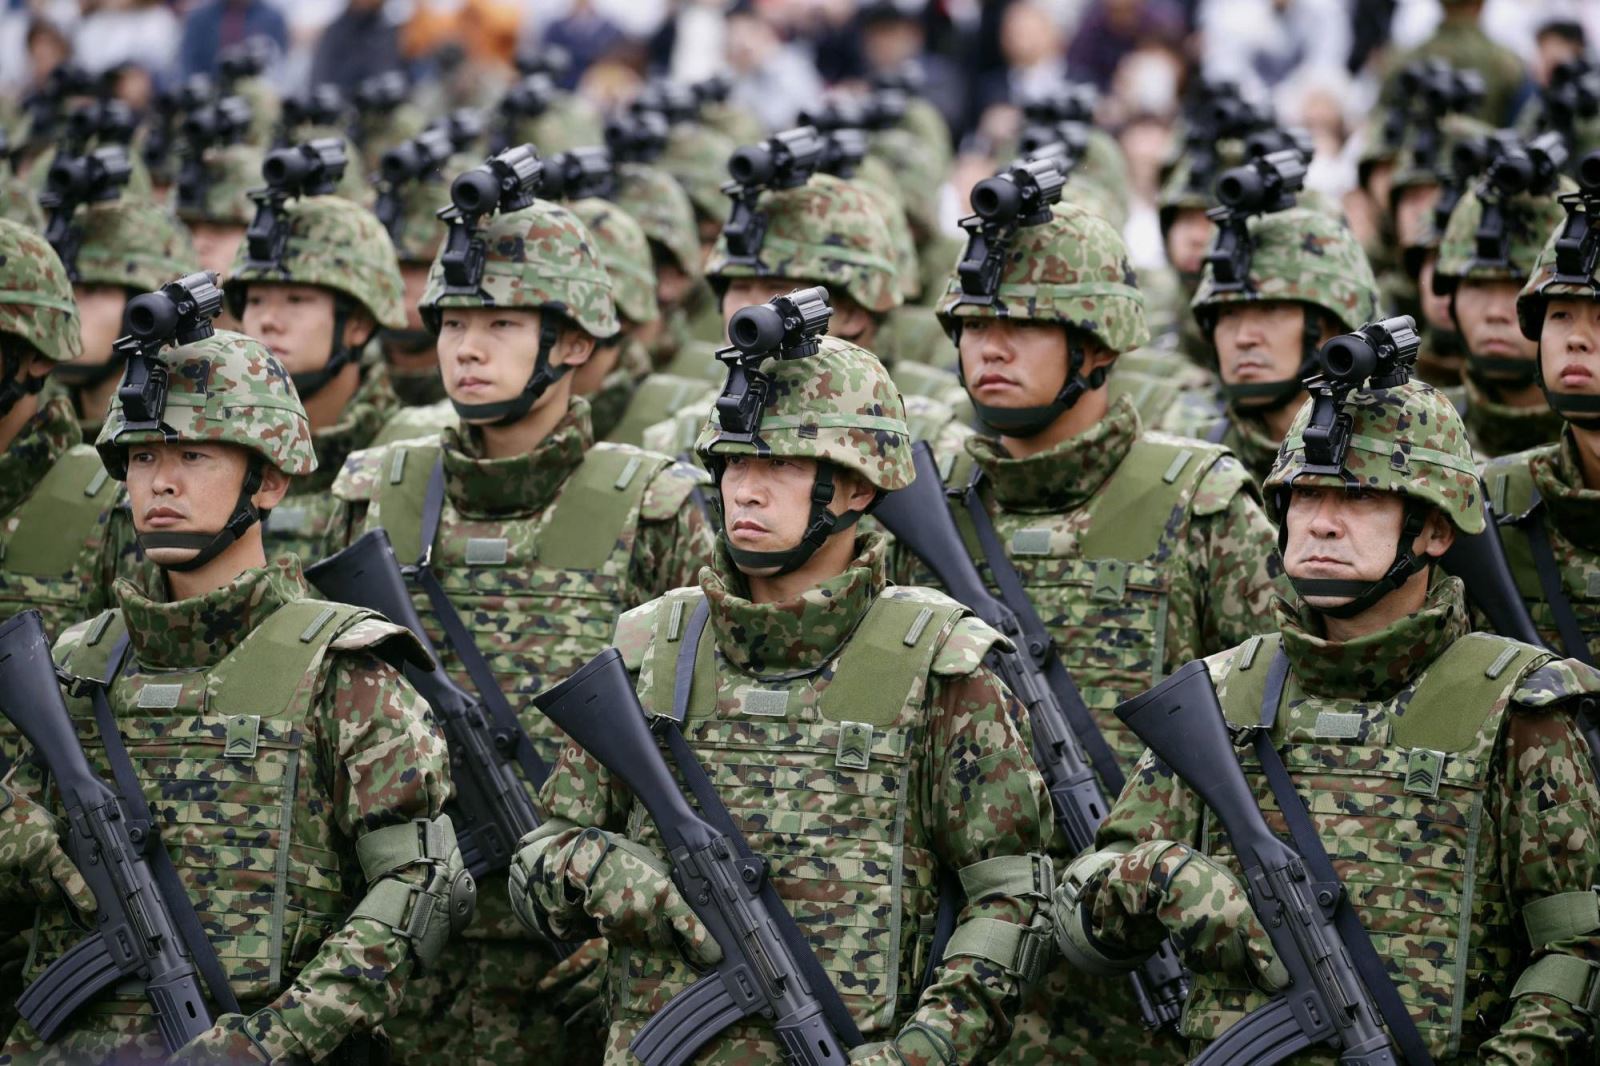 Cuộc chạy đua vũ trang lớn nhất ở châu Á có nguy cơ vượt tầm kiểm soát - ảnh 4